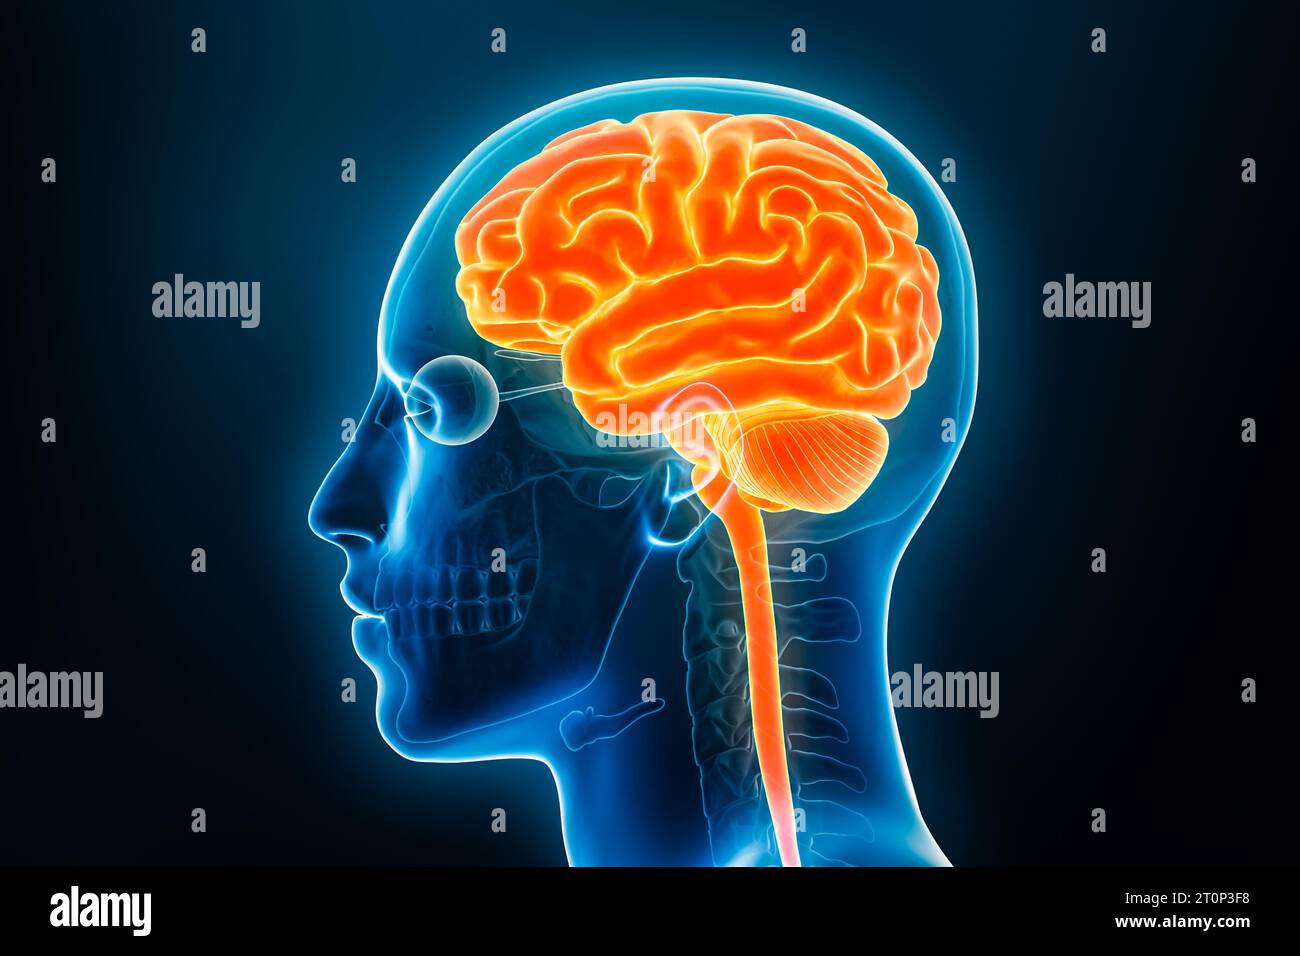 Profilansicht des Gehirns und des Rückenmarks Röntgendarstellung 3D-Darstellung. Anatomie des menschlichen Körpers und des zentralen Nervensystems, Medizin, Biologie, Ischienenkörper Stockfoto